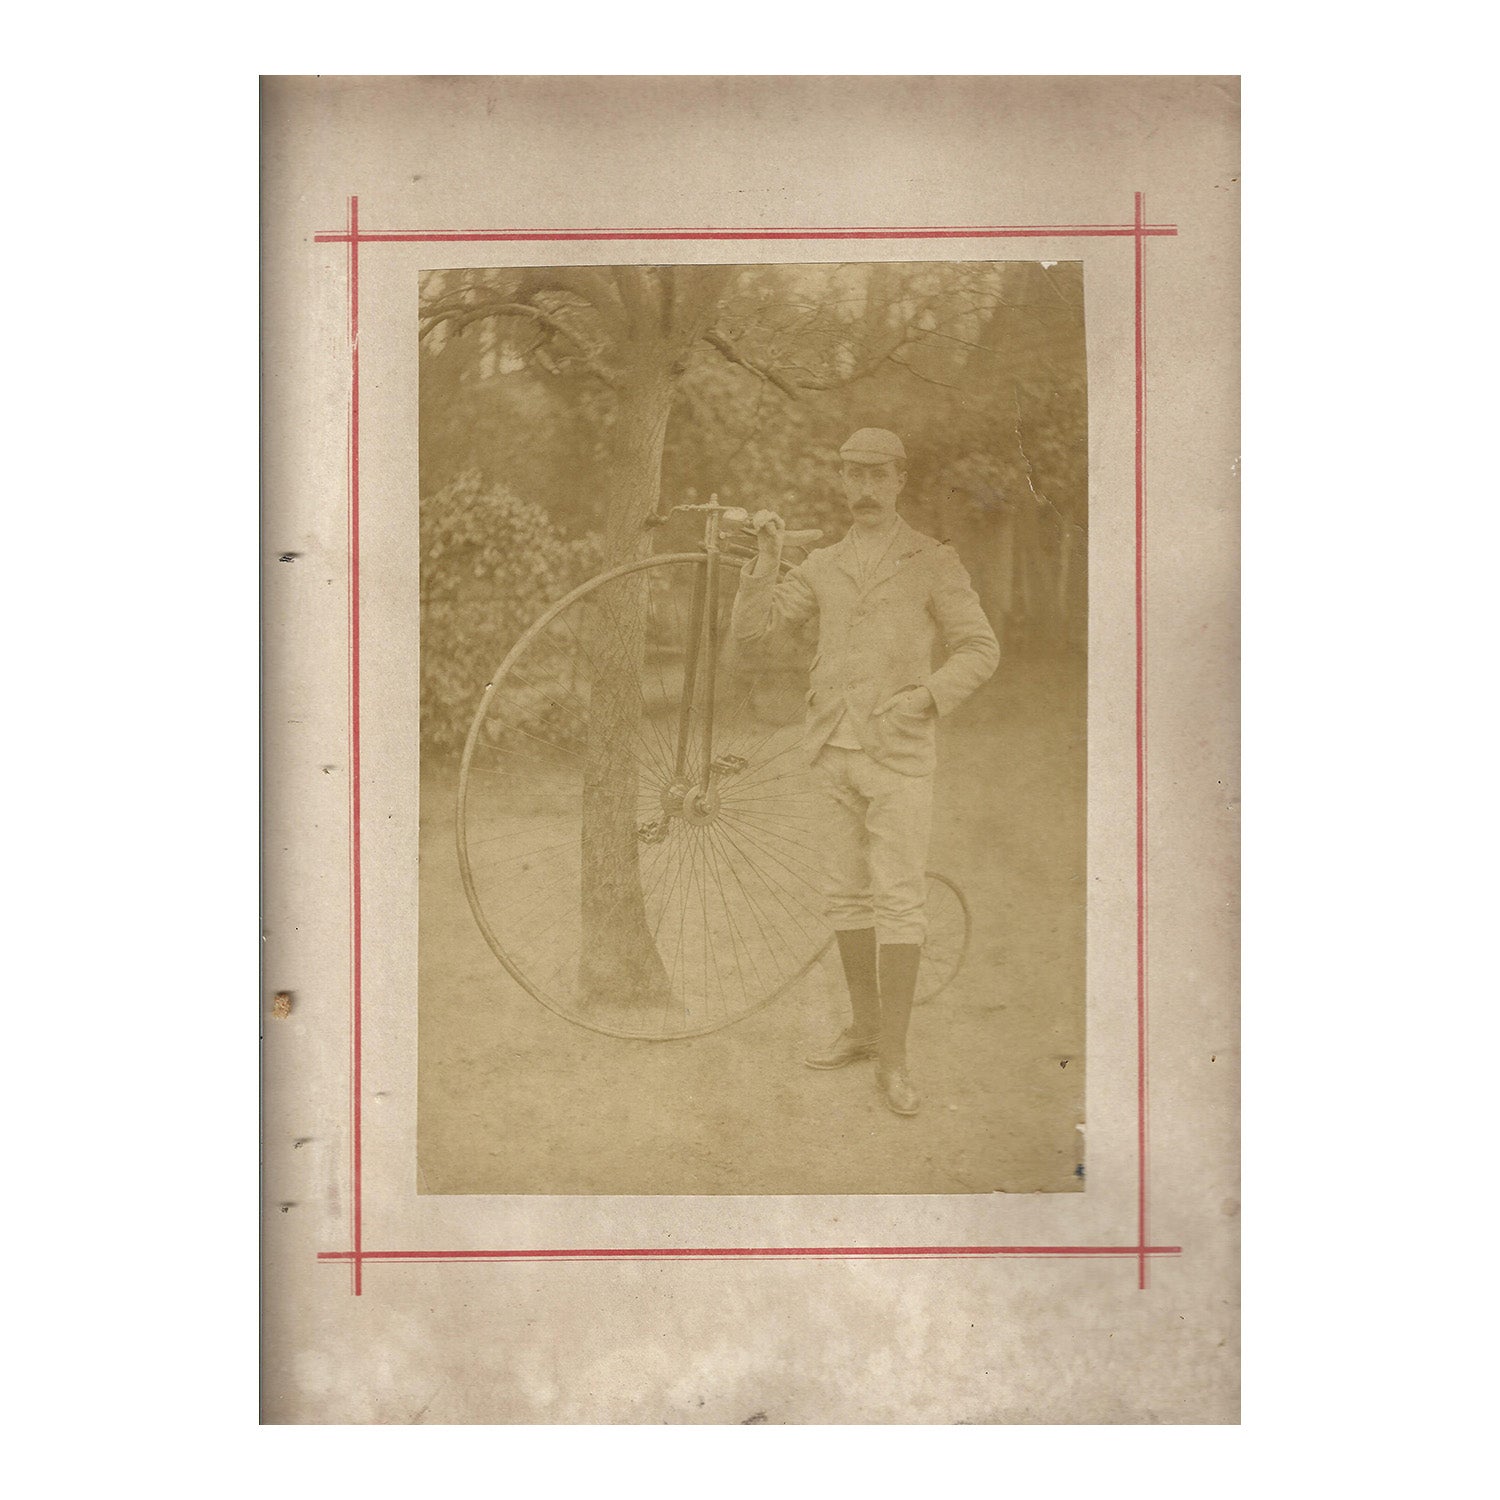 Penny farthing cyclist, c. 1890